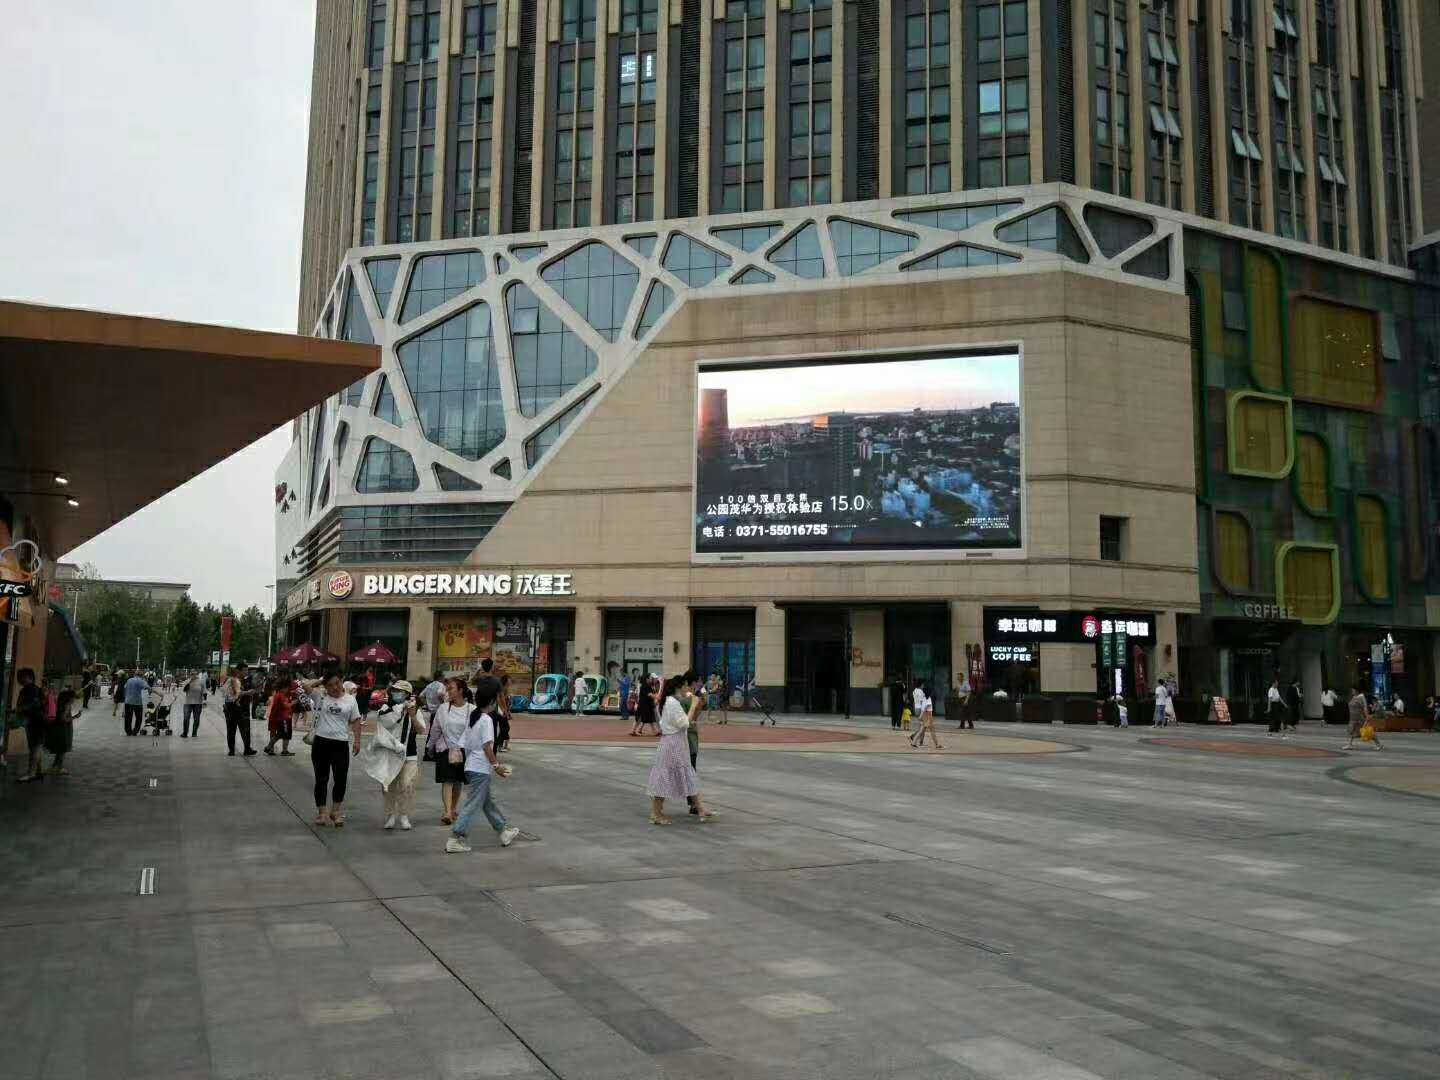 郑州高新区朗悦公园茂广场LED大屏广告火热招商中